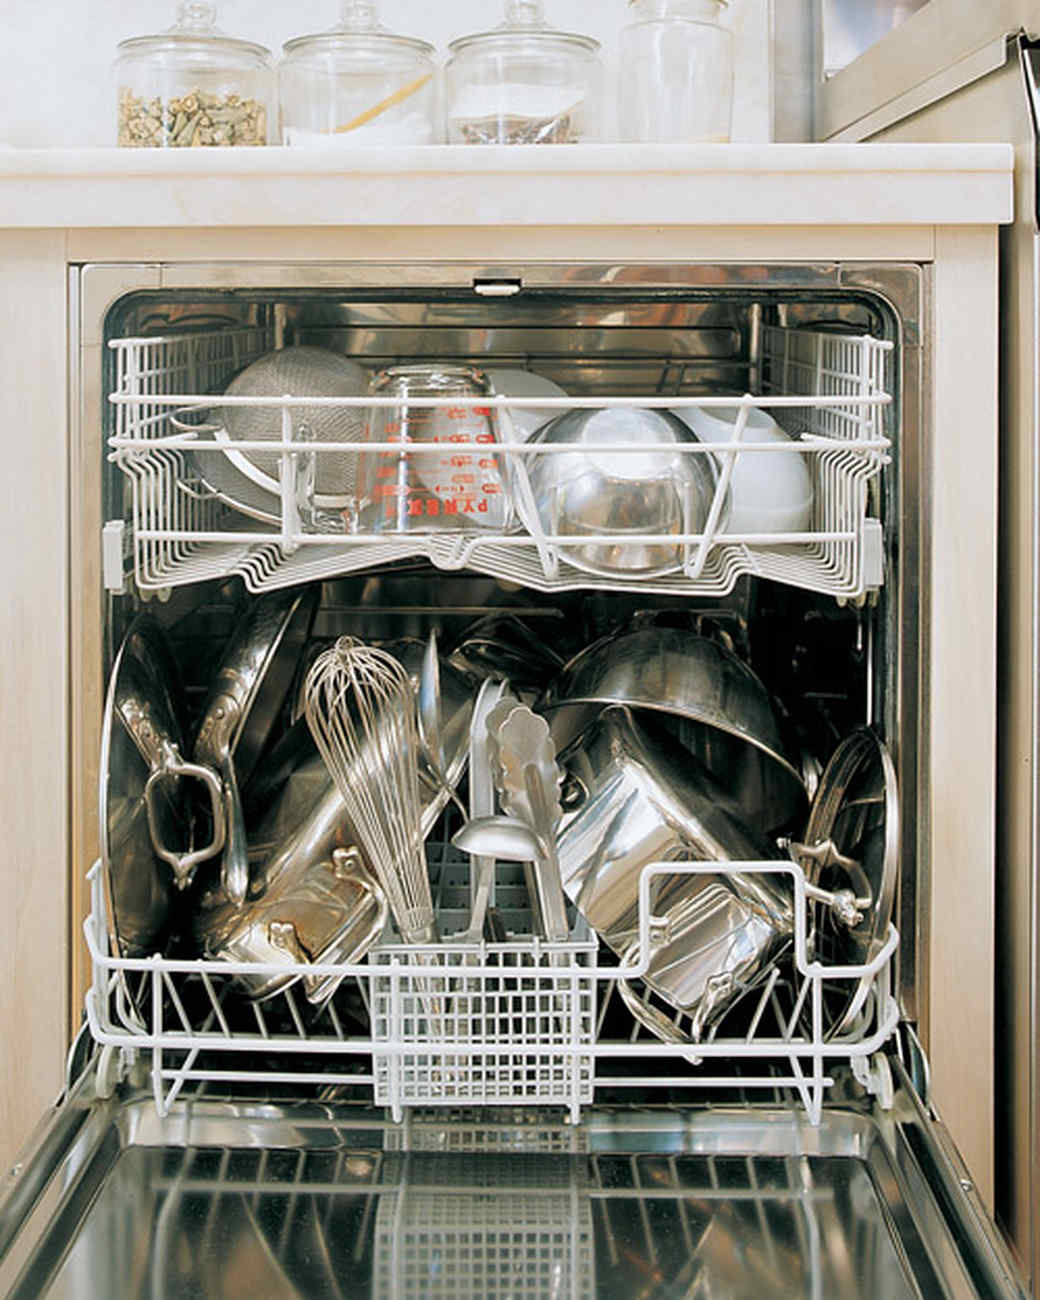 How do you deodorize a dishwasher?